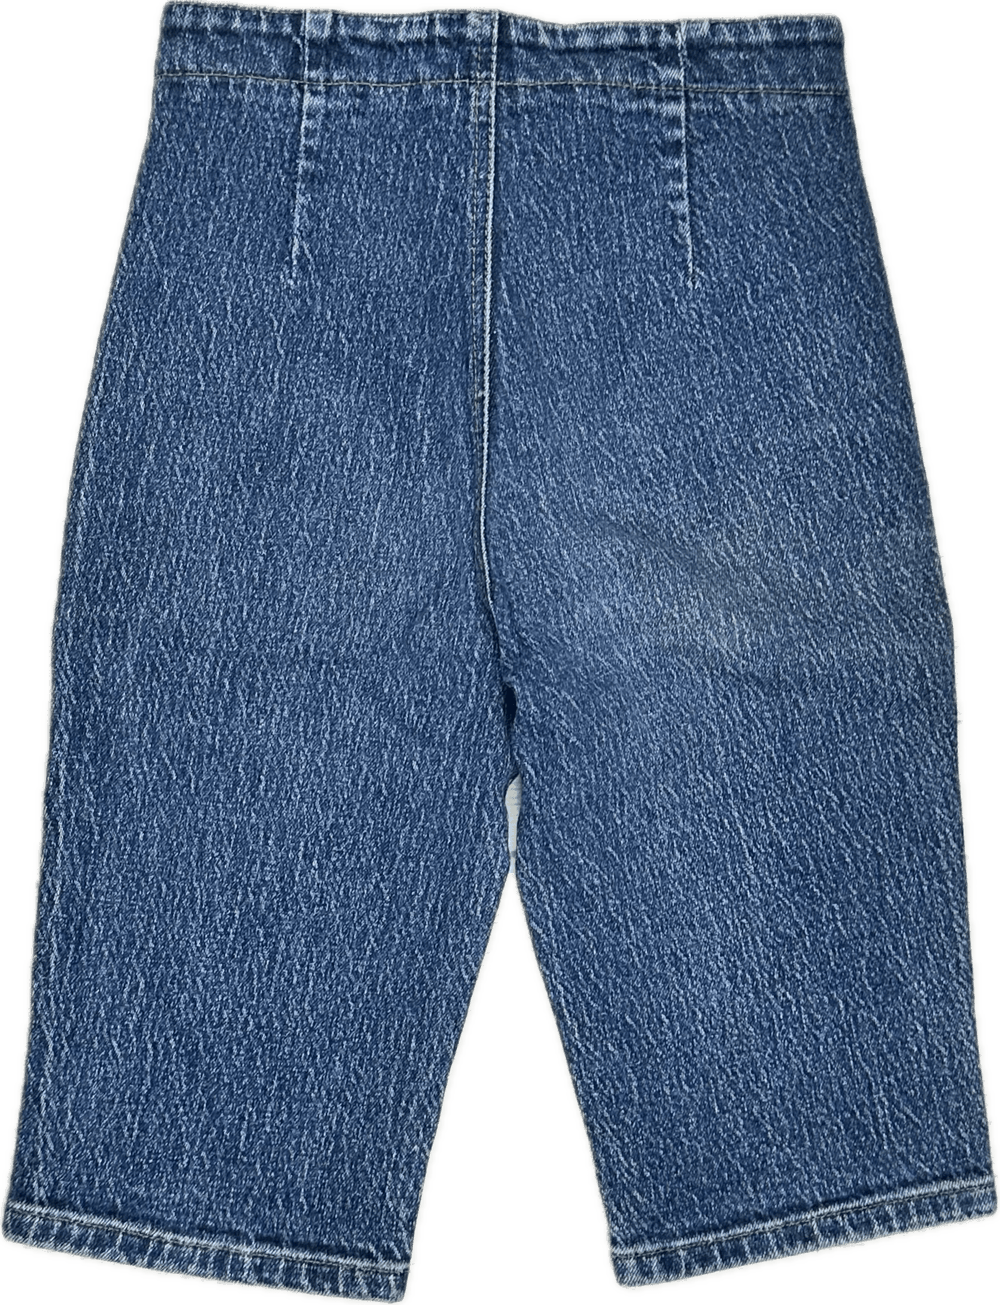 Blues Union 1980's Knickerbocker Zip Jeans - Suit Size 6 - Jean Pool